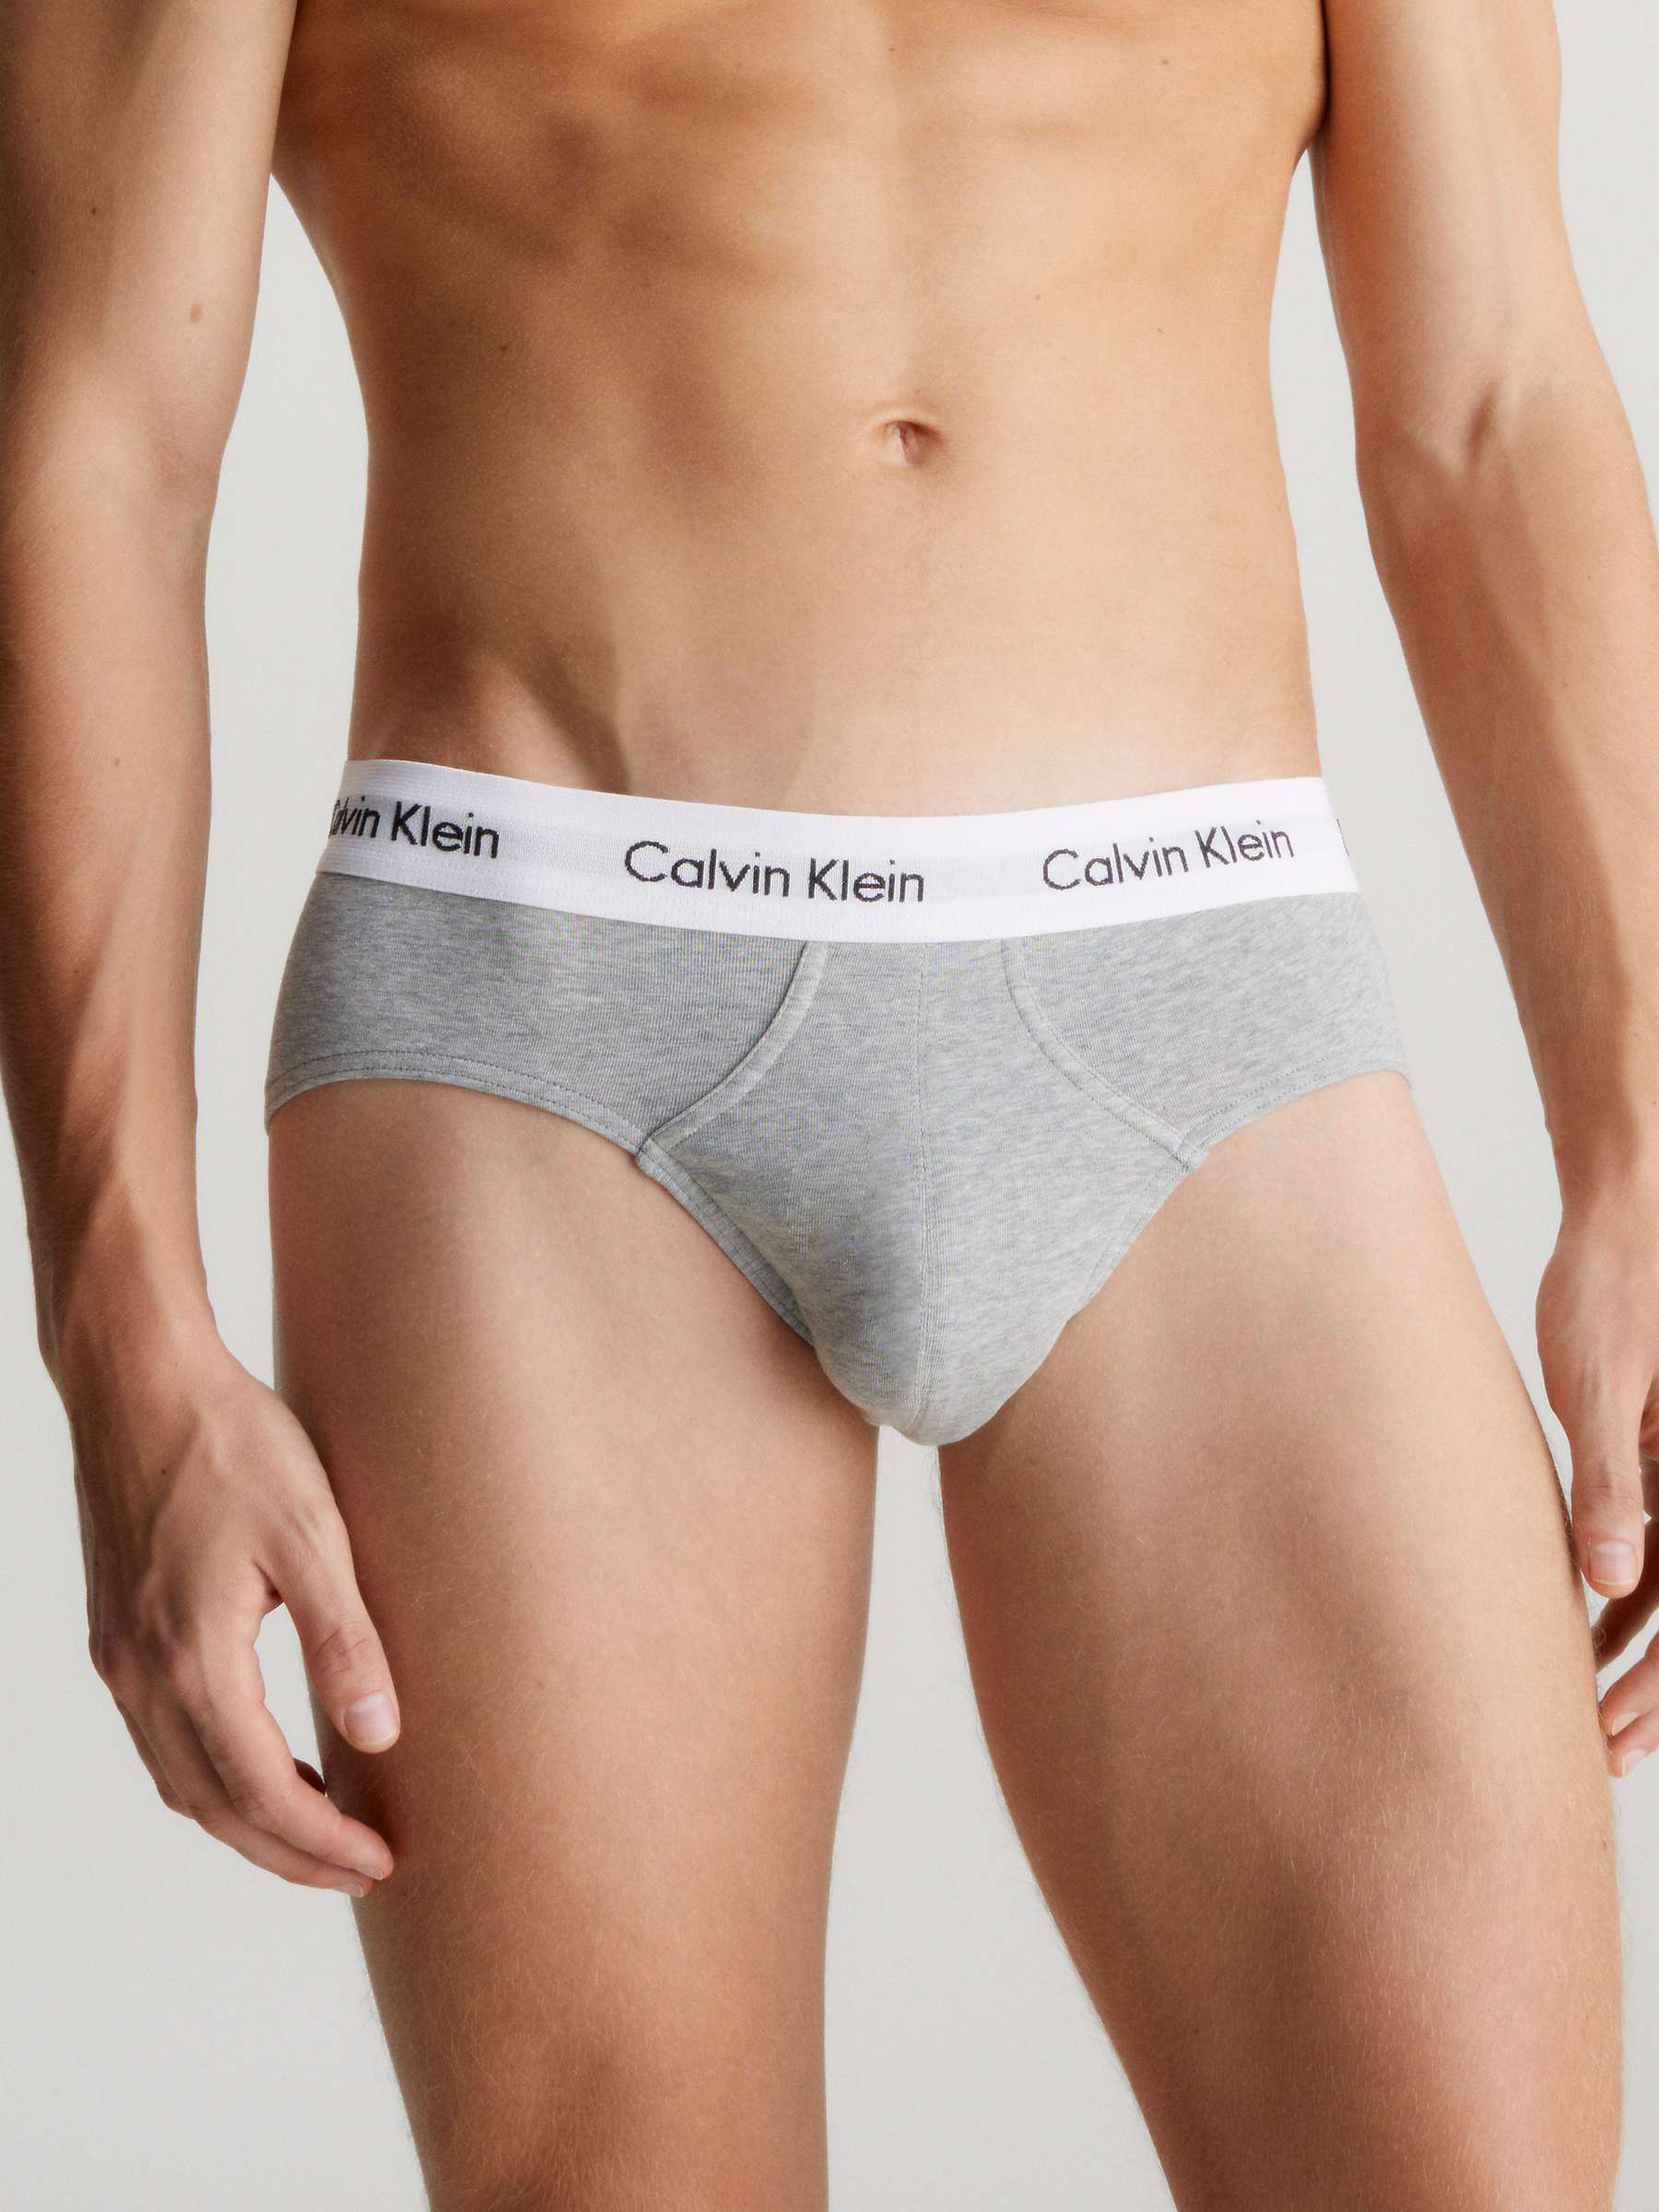 Buy Calvin Klein Cotton Stretch Hip Briefs, Pack of 3, Grey/Chesapeake/Jewel Online at johnlewis.com